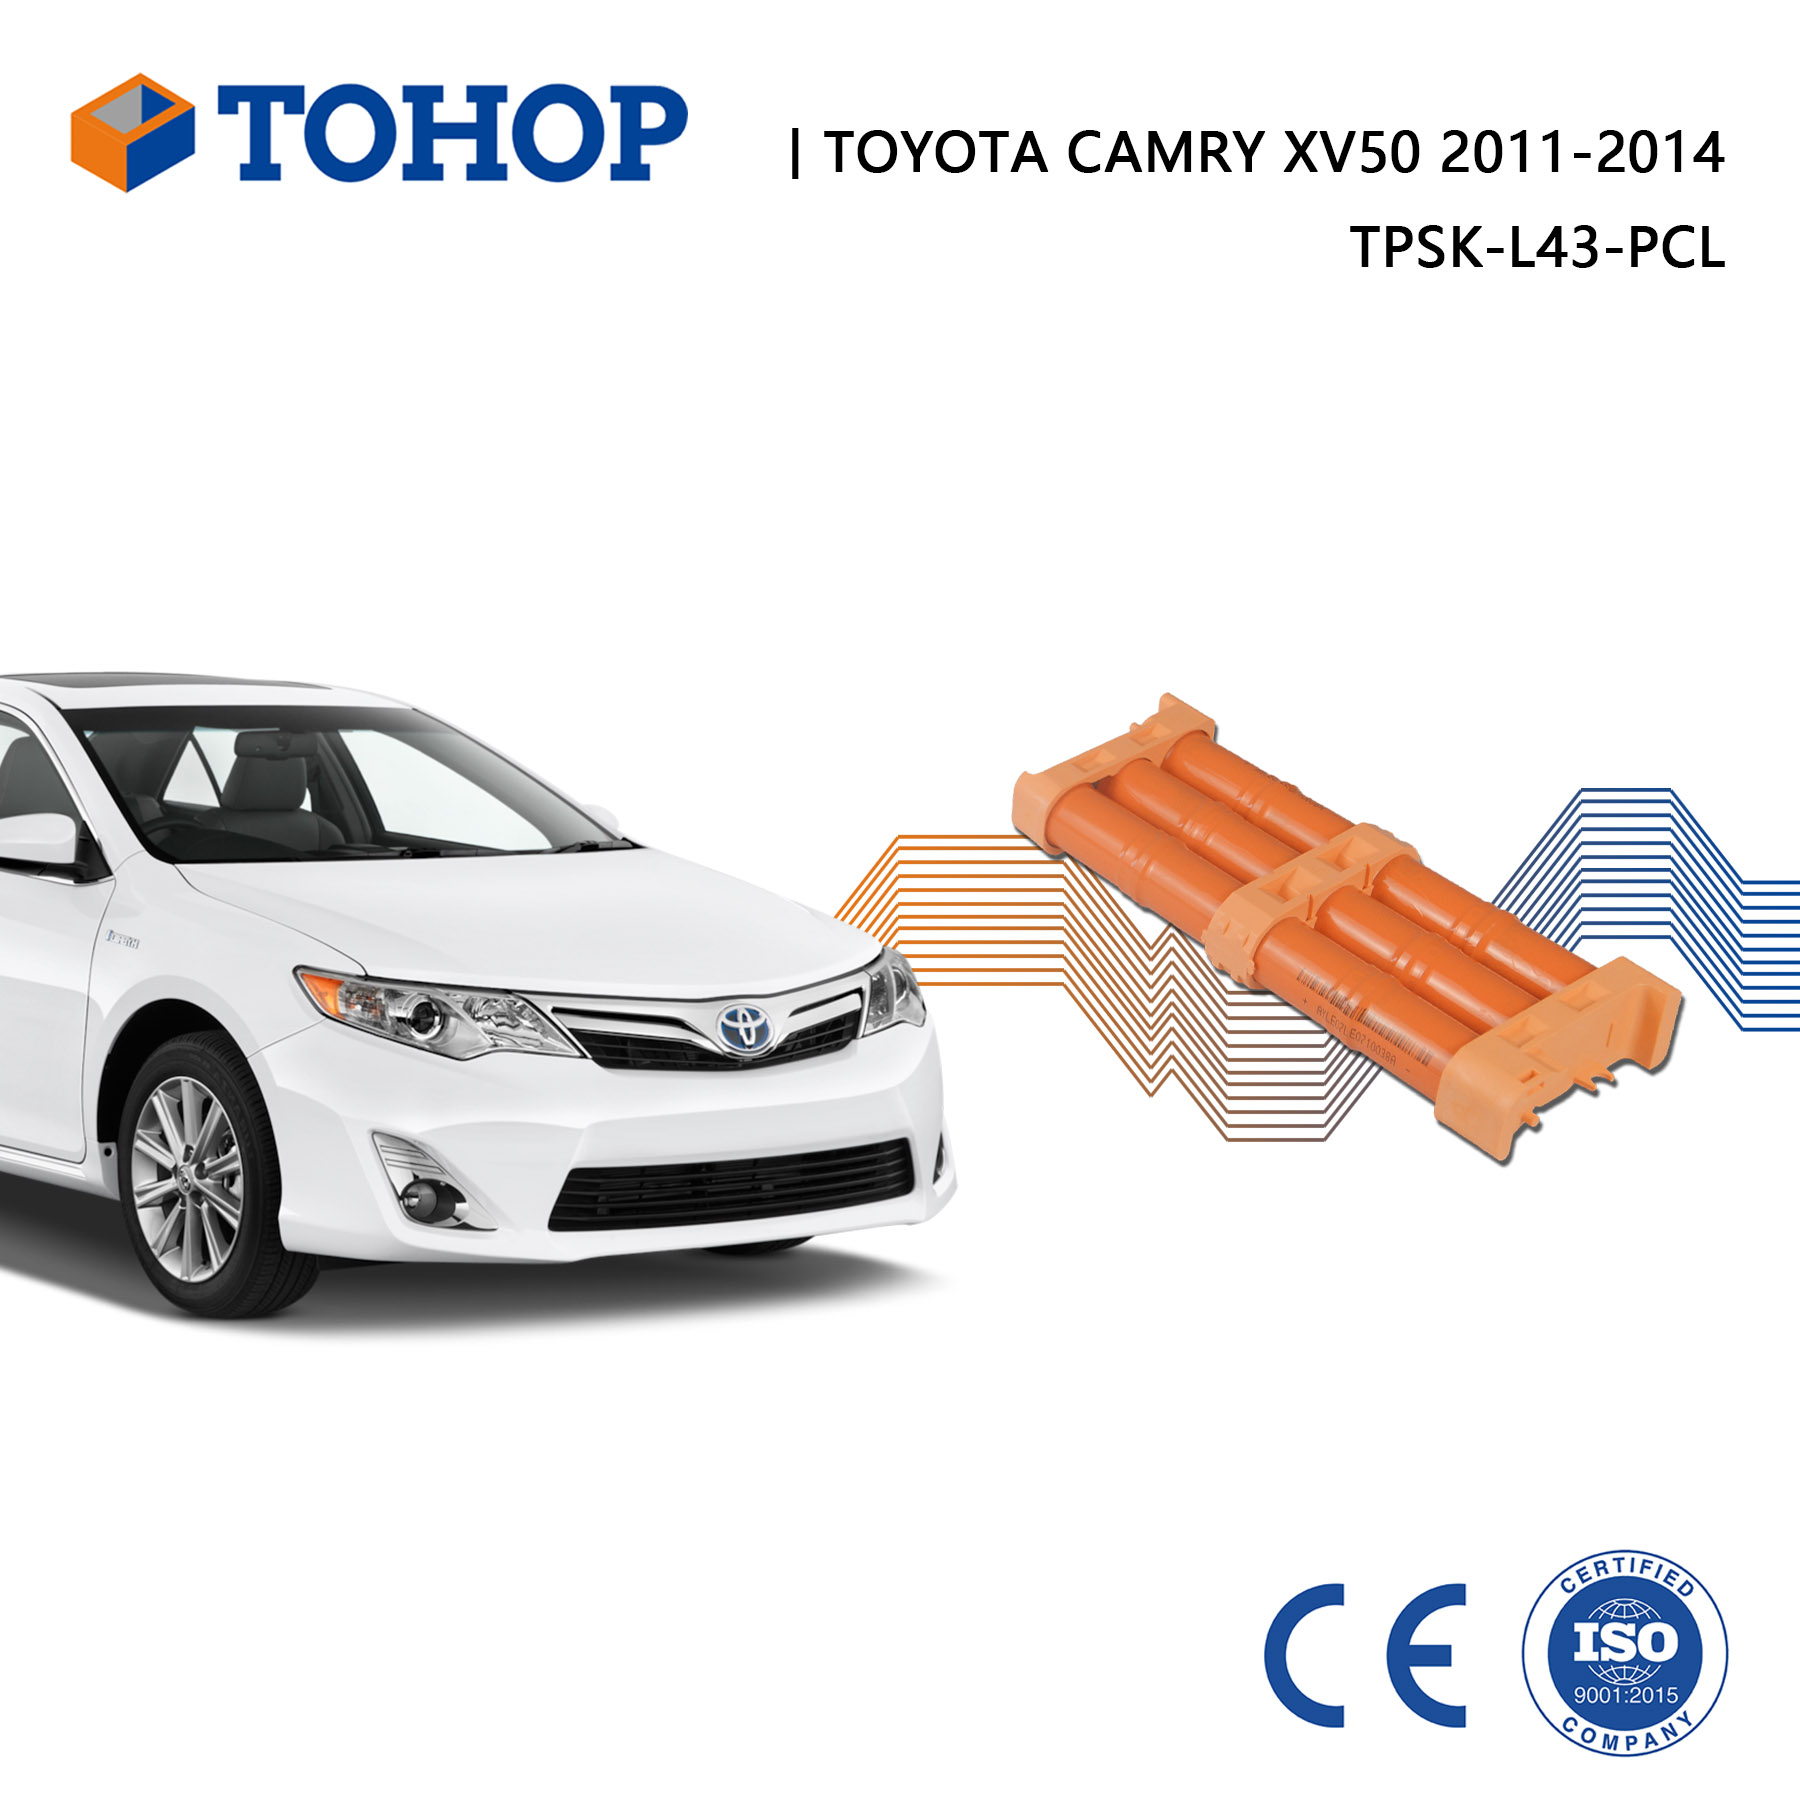 Nuovissimo pacco batteria ibrido Camry XV50 2014 14.4V per Toyota